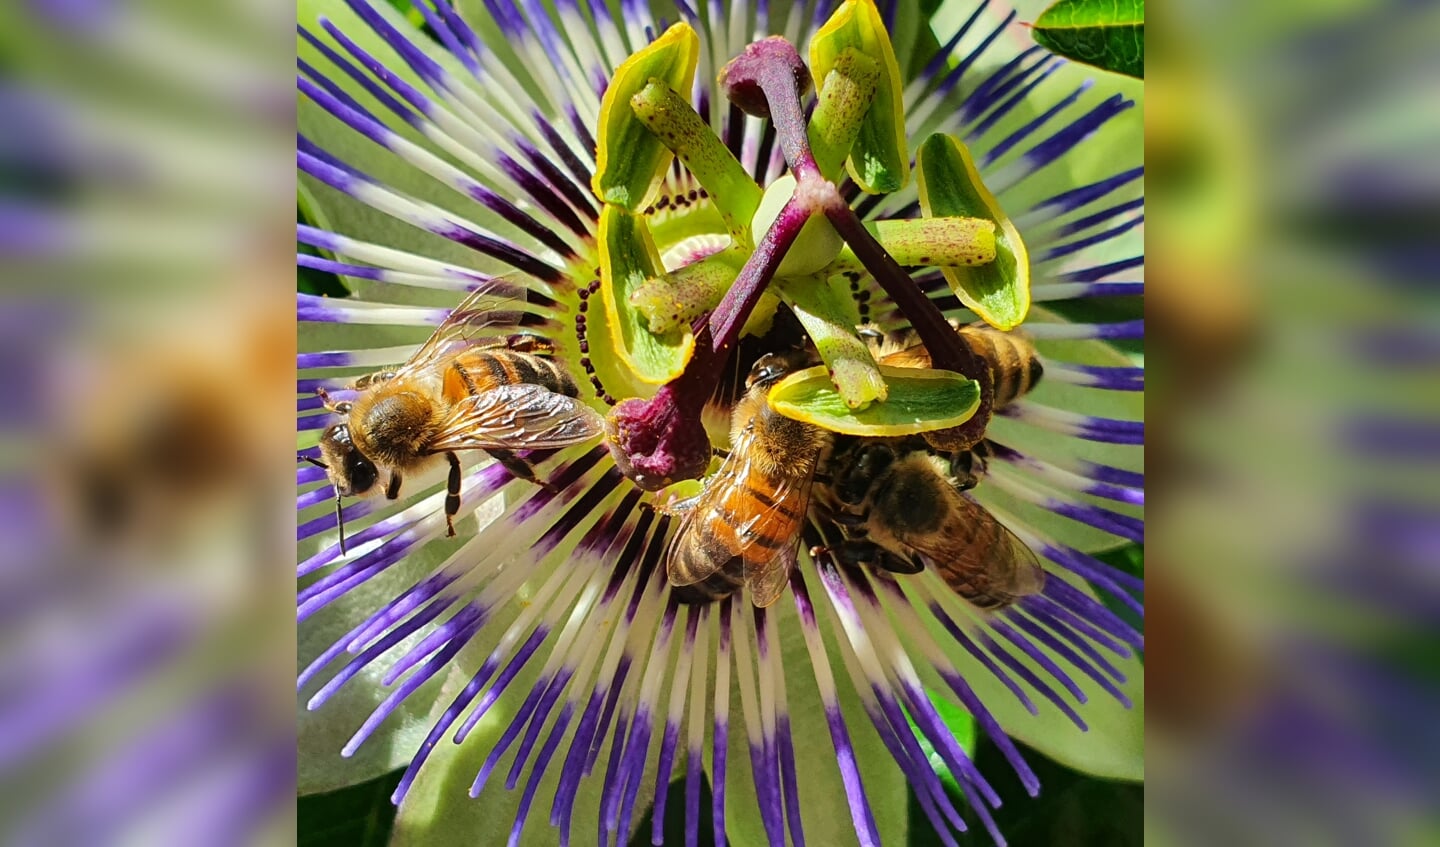 ,,Deze foto is gemaakt in onze achtertuin aan de Dissel in Veenendaal. De passiebloem bloeit de hele zomer en wij én veel insecten, waaronder deze bijen op de foto, genieten daarvan.